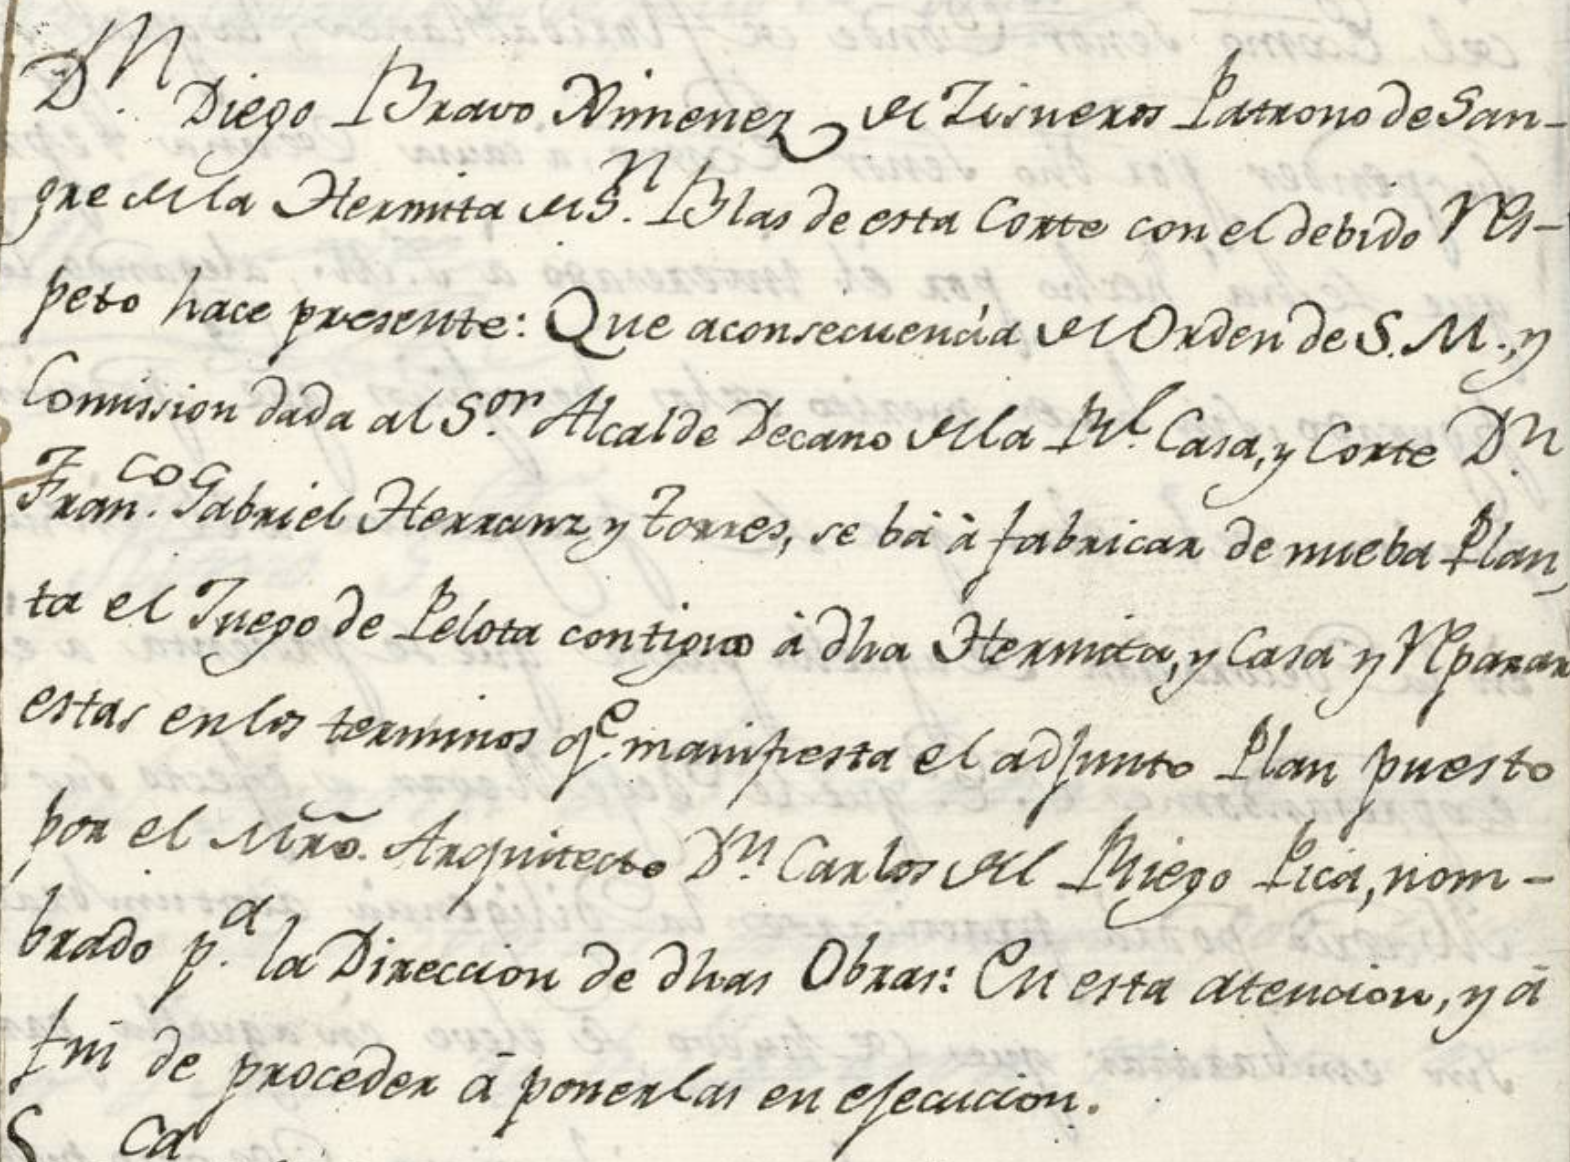 Solicitud de licencia de construcción del juego de pelota (1791)